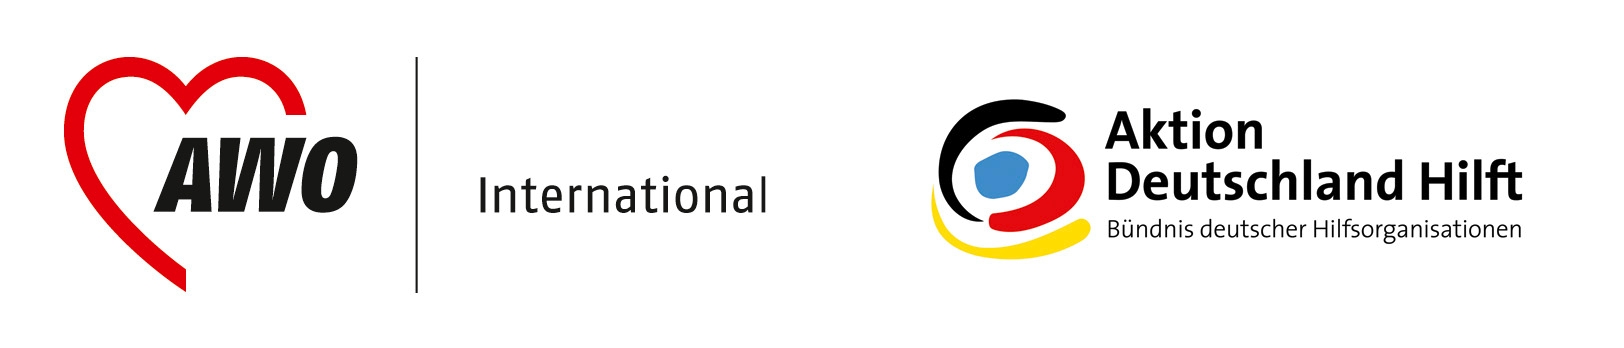 Logos AWO und Deutschland hilft